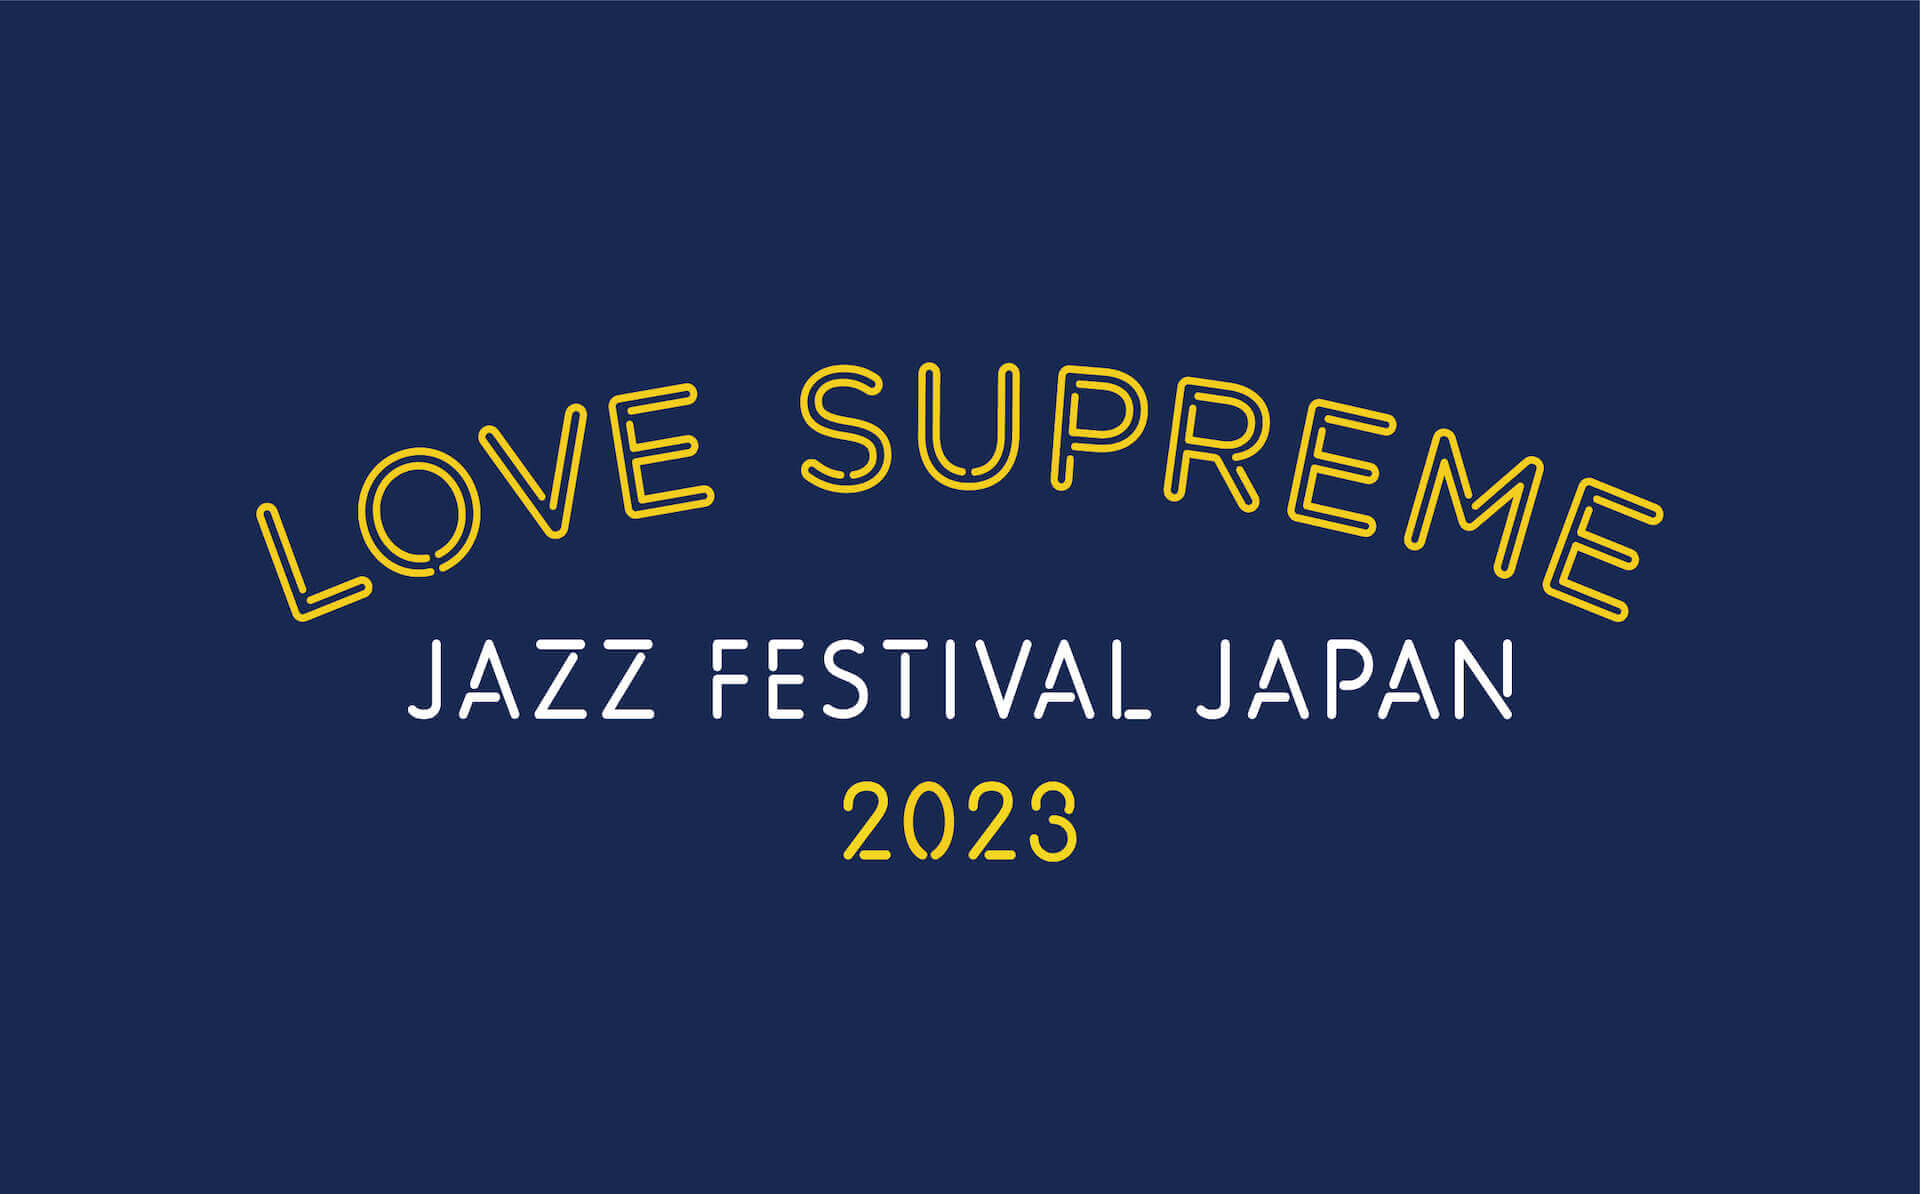 気づけば敷居の向こう側にいる──＜LOVE SUPREME JAZZ FESTIVAL JAPAN 2023＞ライブレポート column230531_lovesupremefestival-report-037